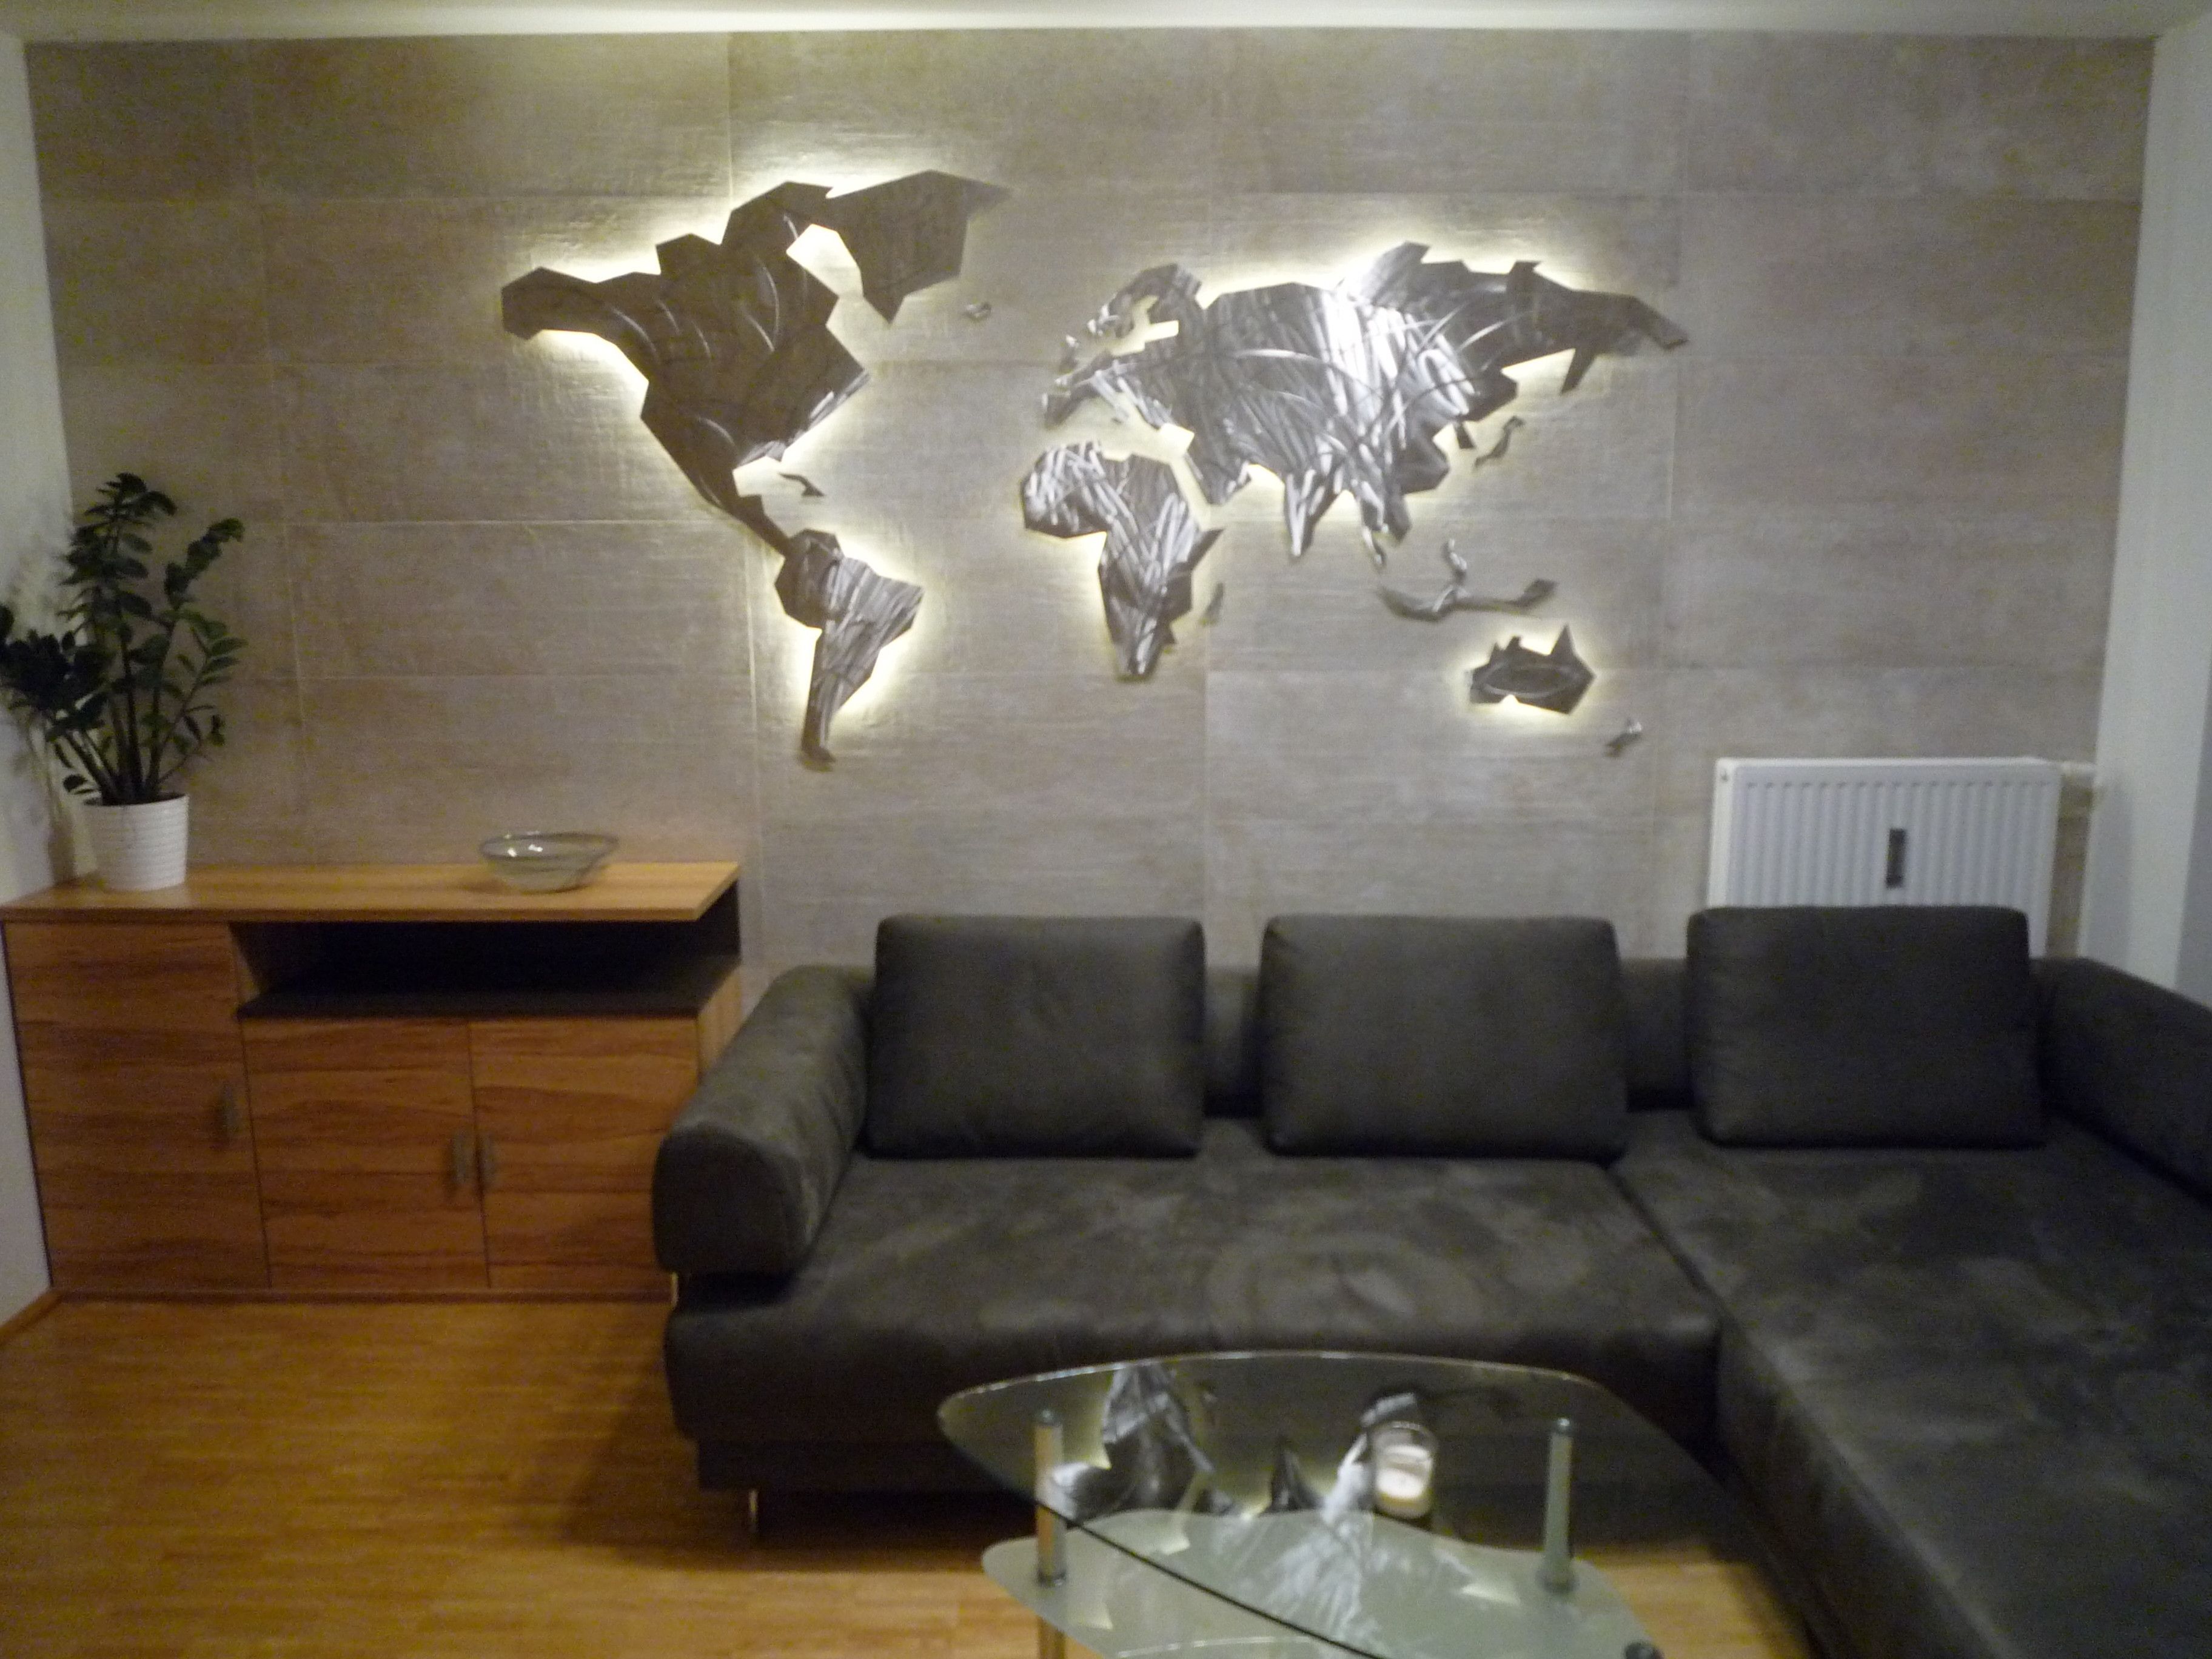 39 Inspirational World Map Wall Art Framed Design Ideas Of Led Wall Regarding World Map Wall Art (View 9 of 20)